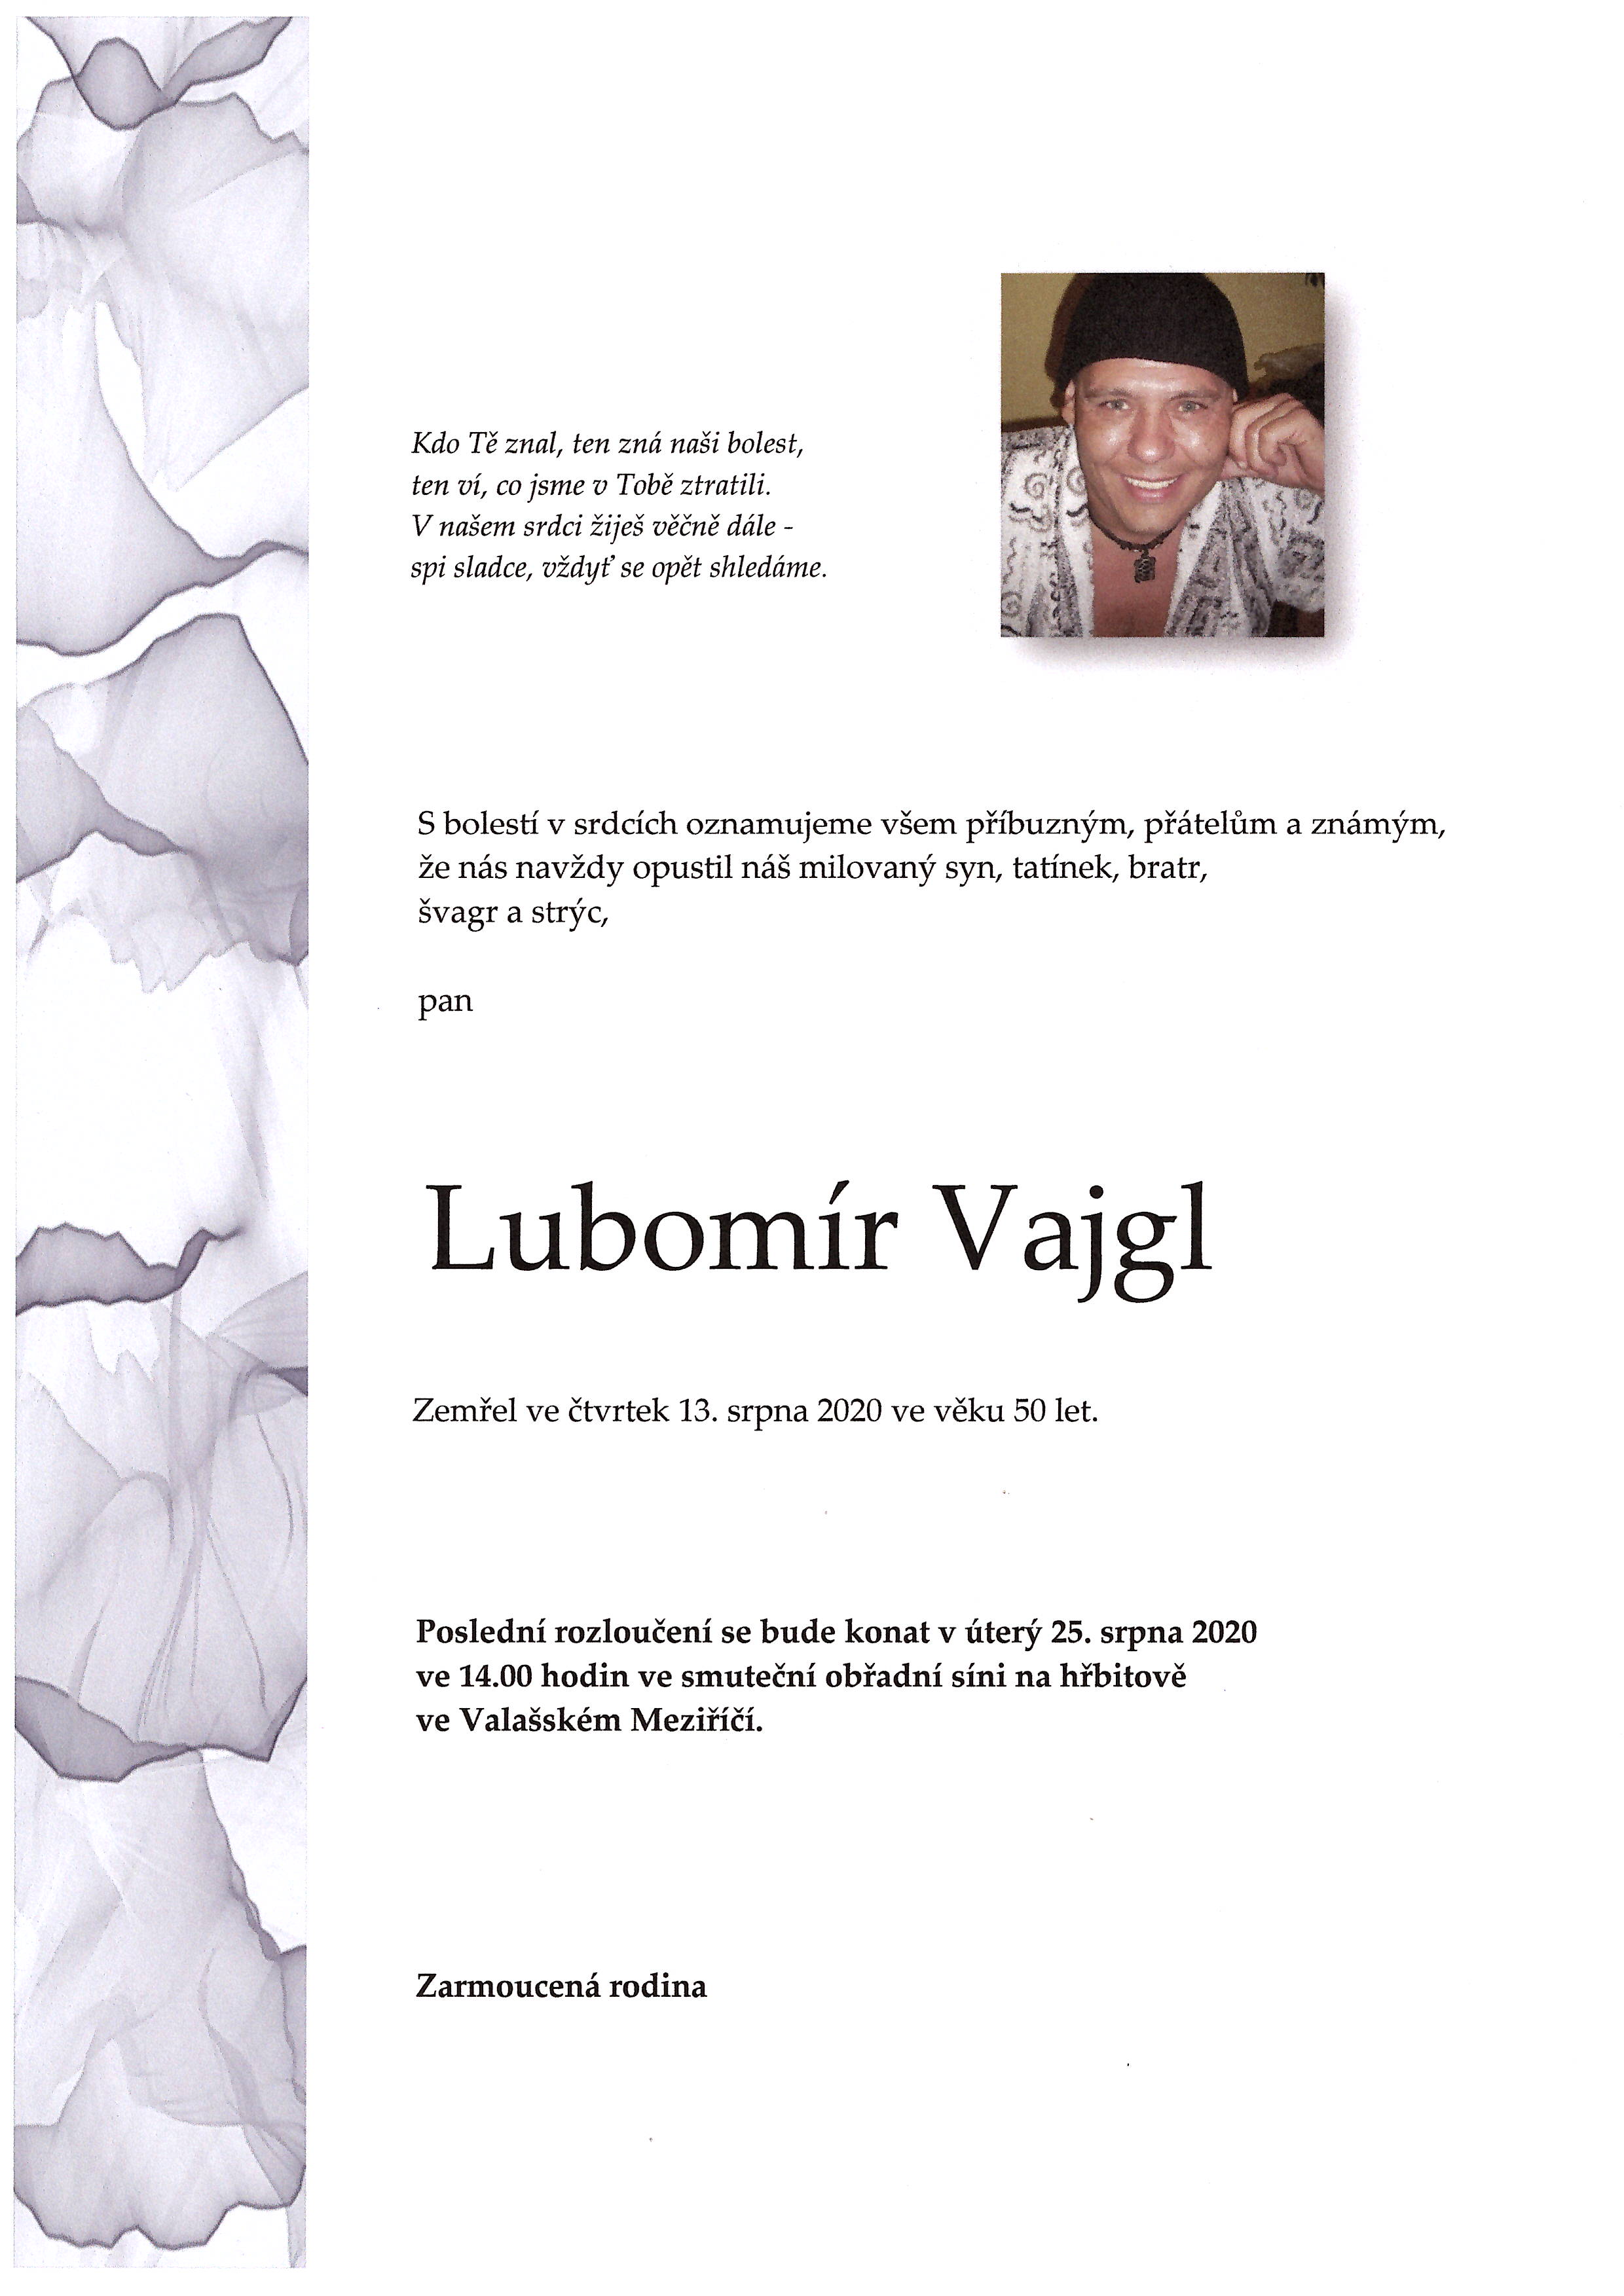 Lubomír Vajgl